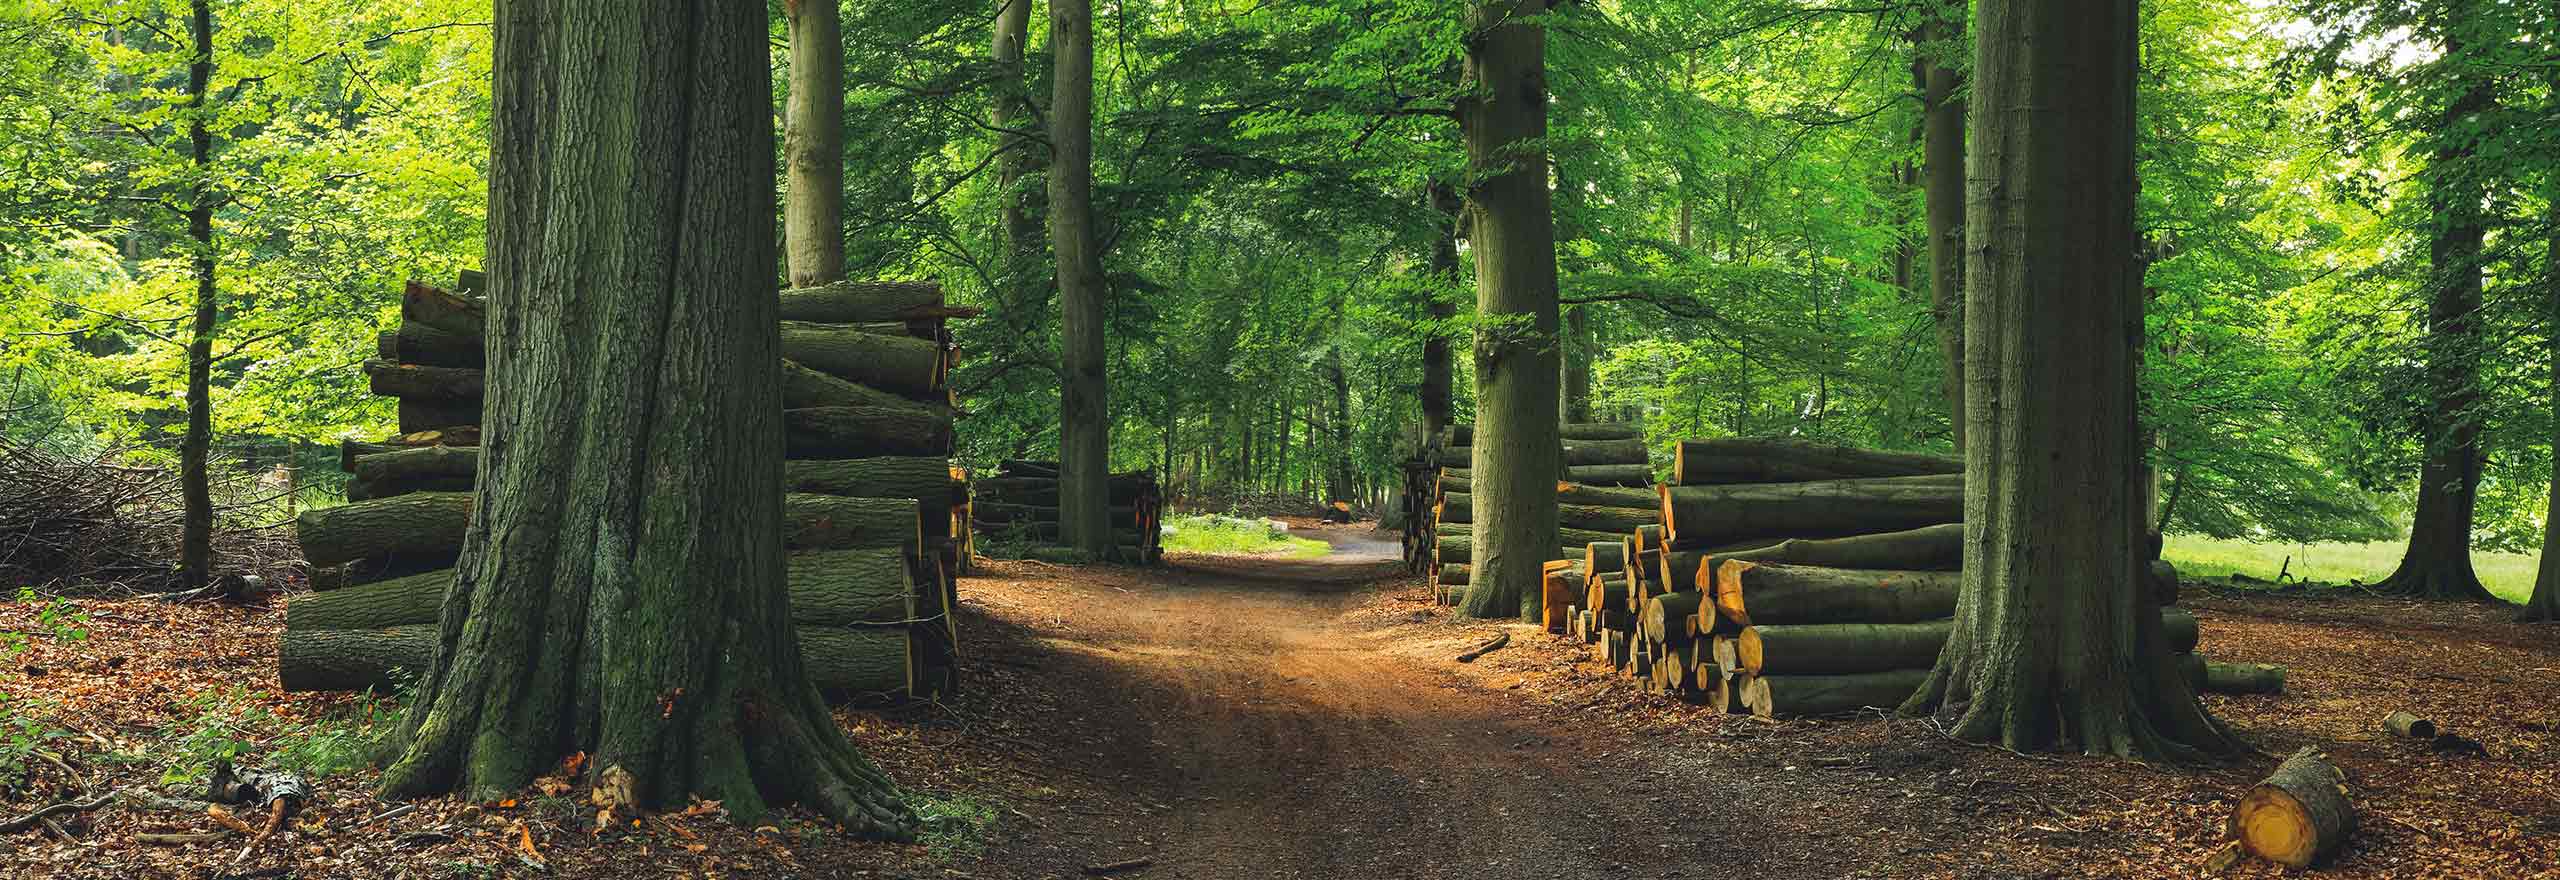 Forêt verte avec arbres coupés et tas de bois 